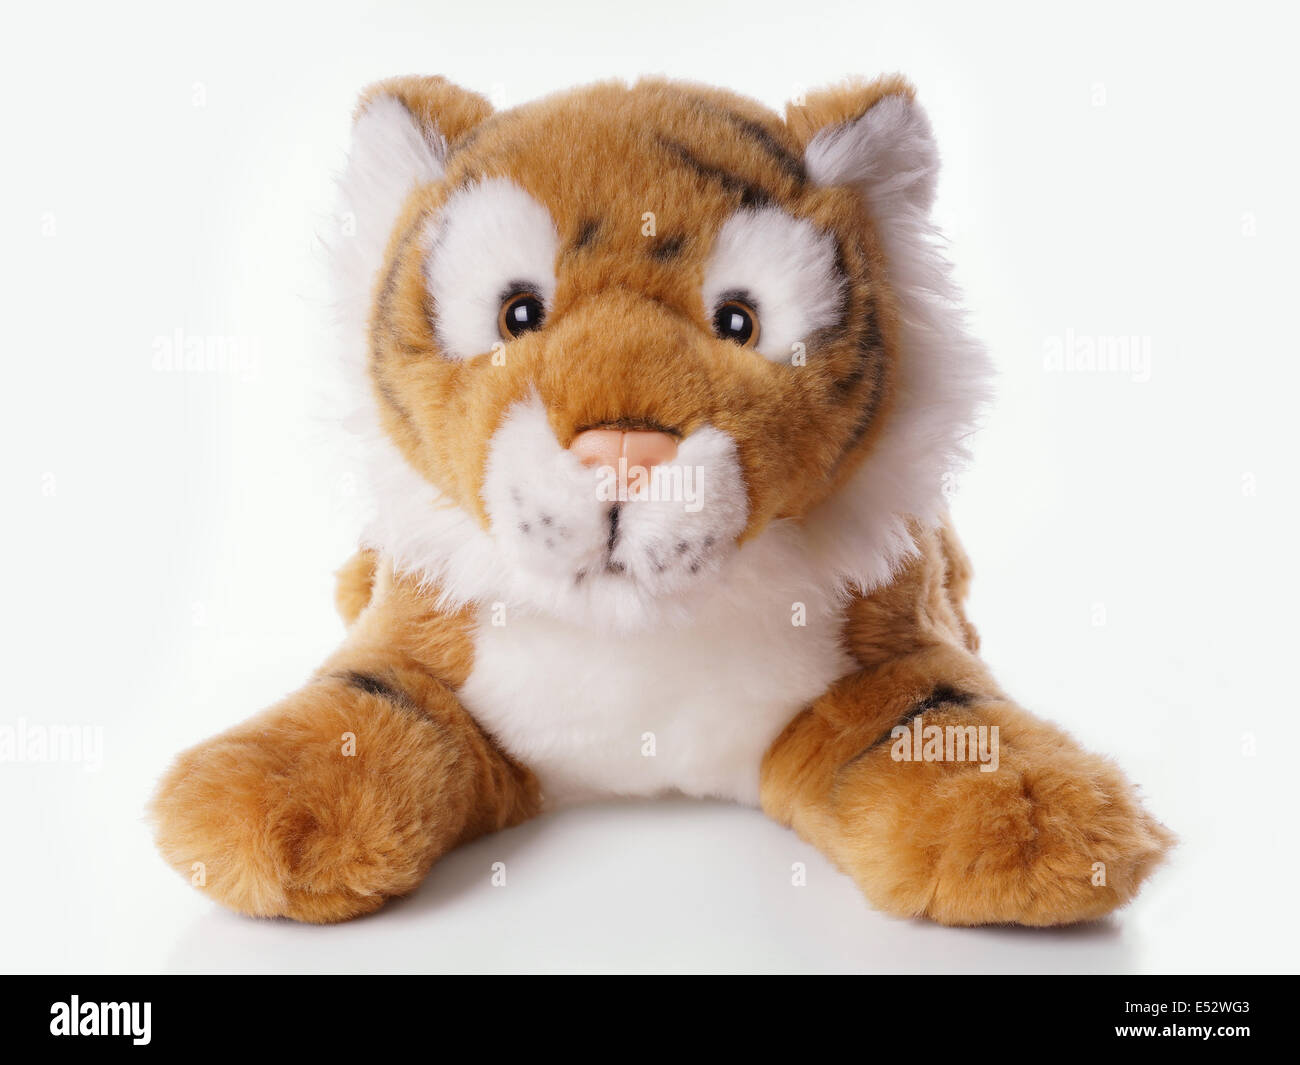 plush toy tiger Stock Photo